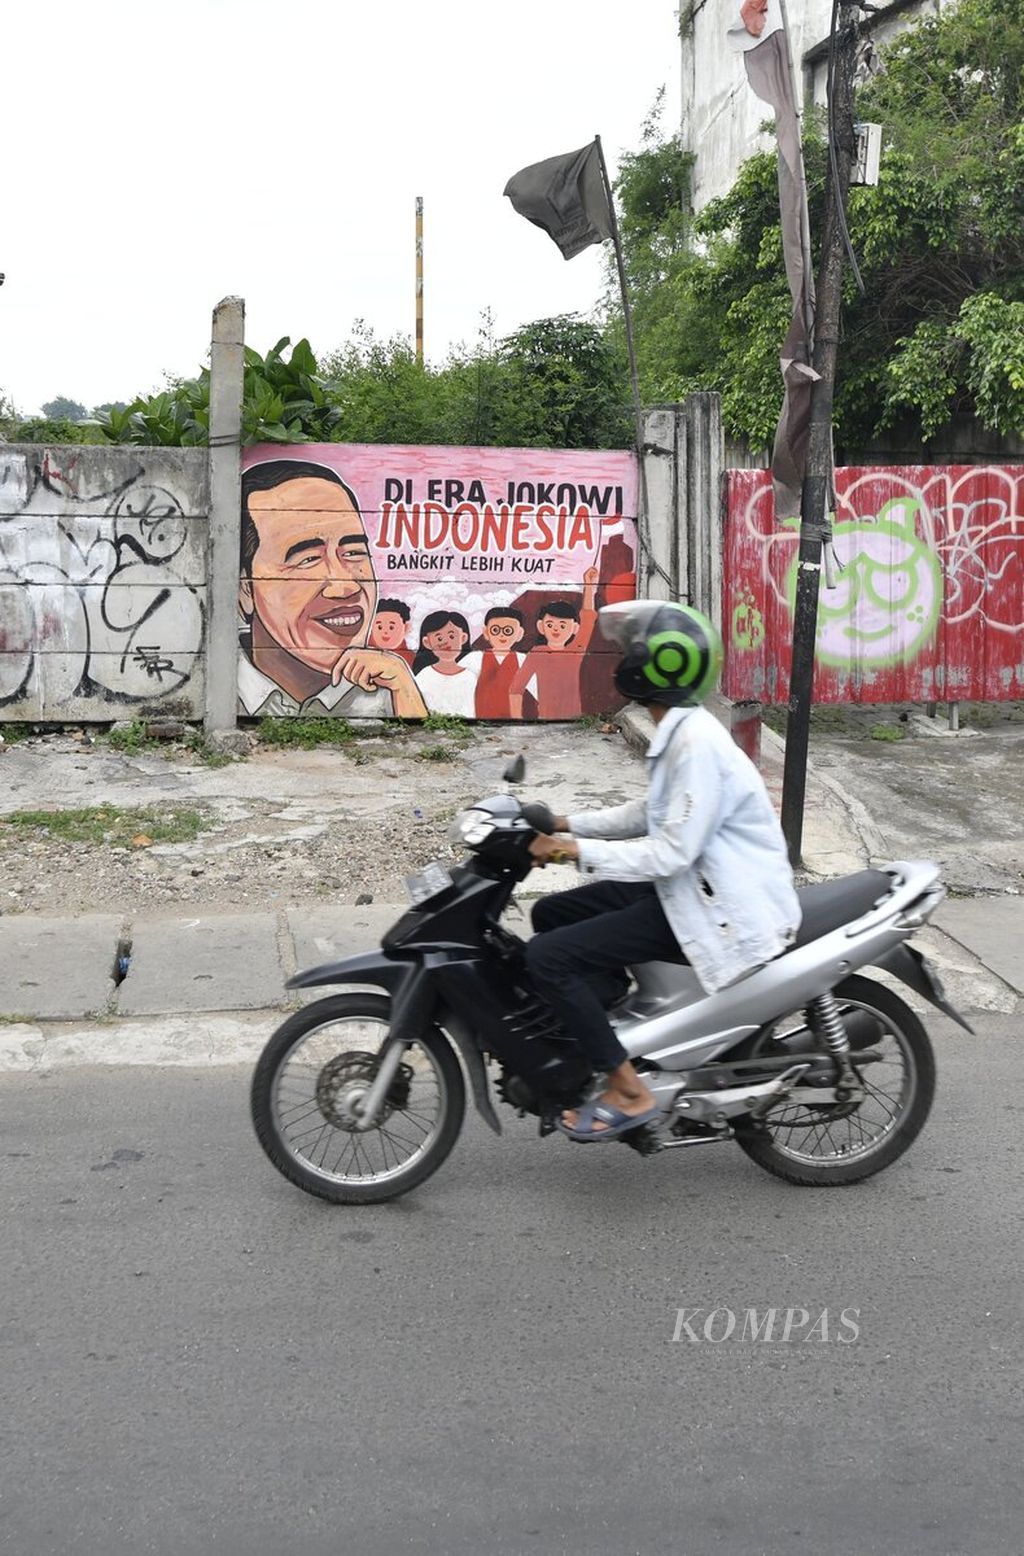 Mural yang menampilkan sosok Presiden Joko Widodo tergambar di salah satu dinding yang berada di Jalan KH Hasyim Ashari, Jakarta Pusat, Selasa (15/11/2022). Mural sebagai bagian dari seni jalanan sering digunakan sebagai media untuk menyampaikan aspirasi baik dengan pesan pujian maupun kritik sosial.